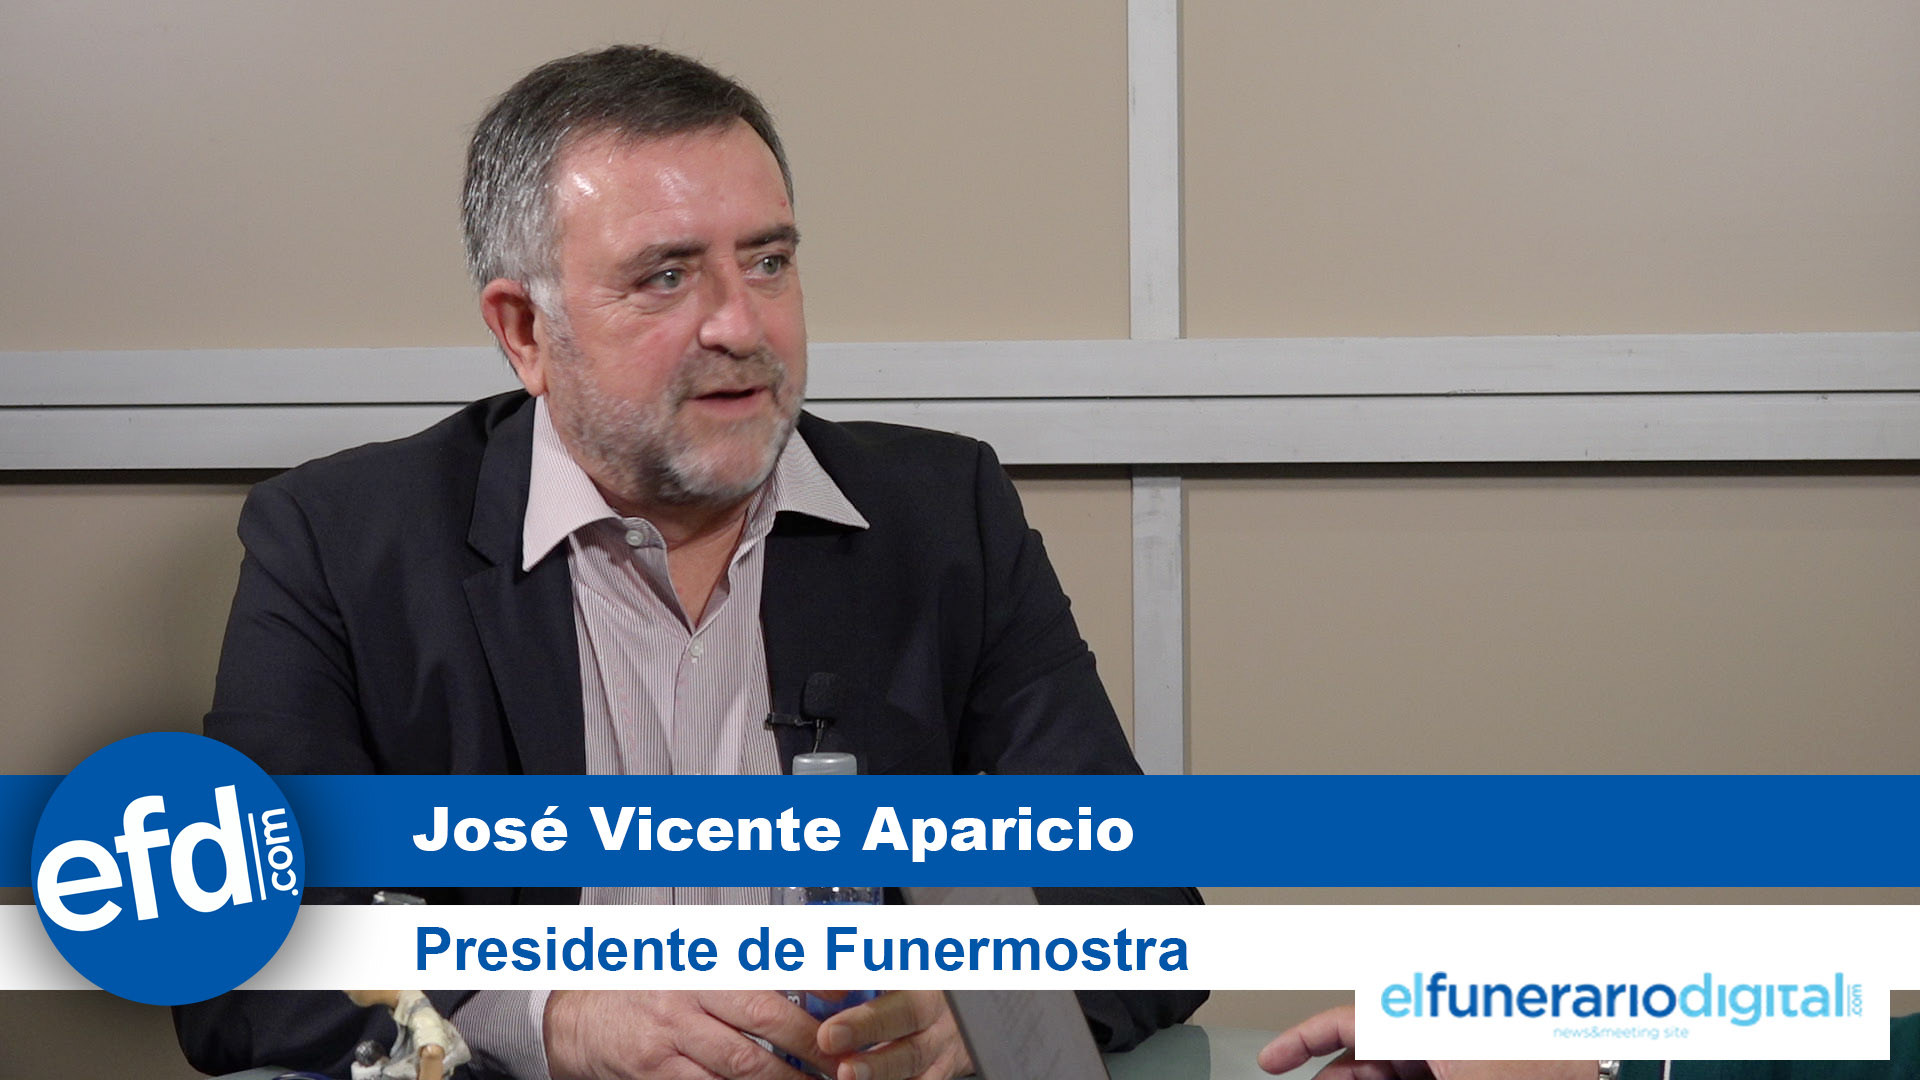 [VÍDEO] Hablamos con José Vicente Aparicio, presidente de Funermostra